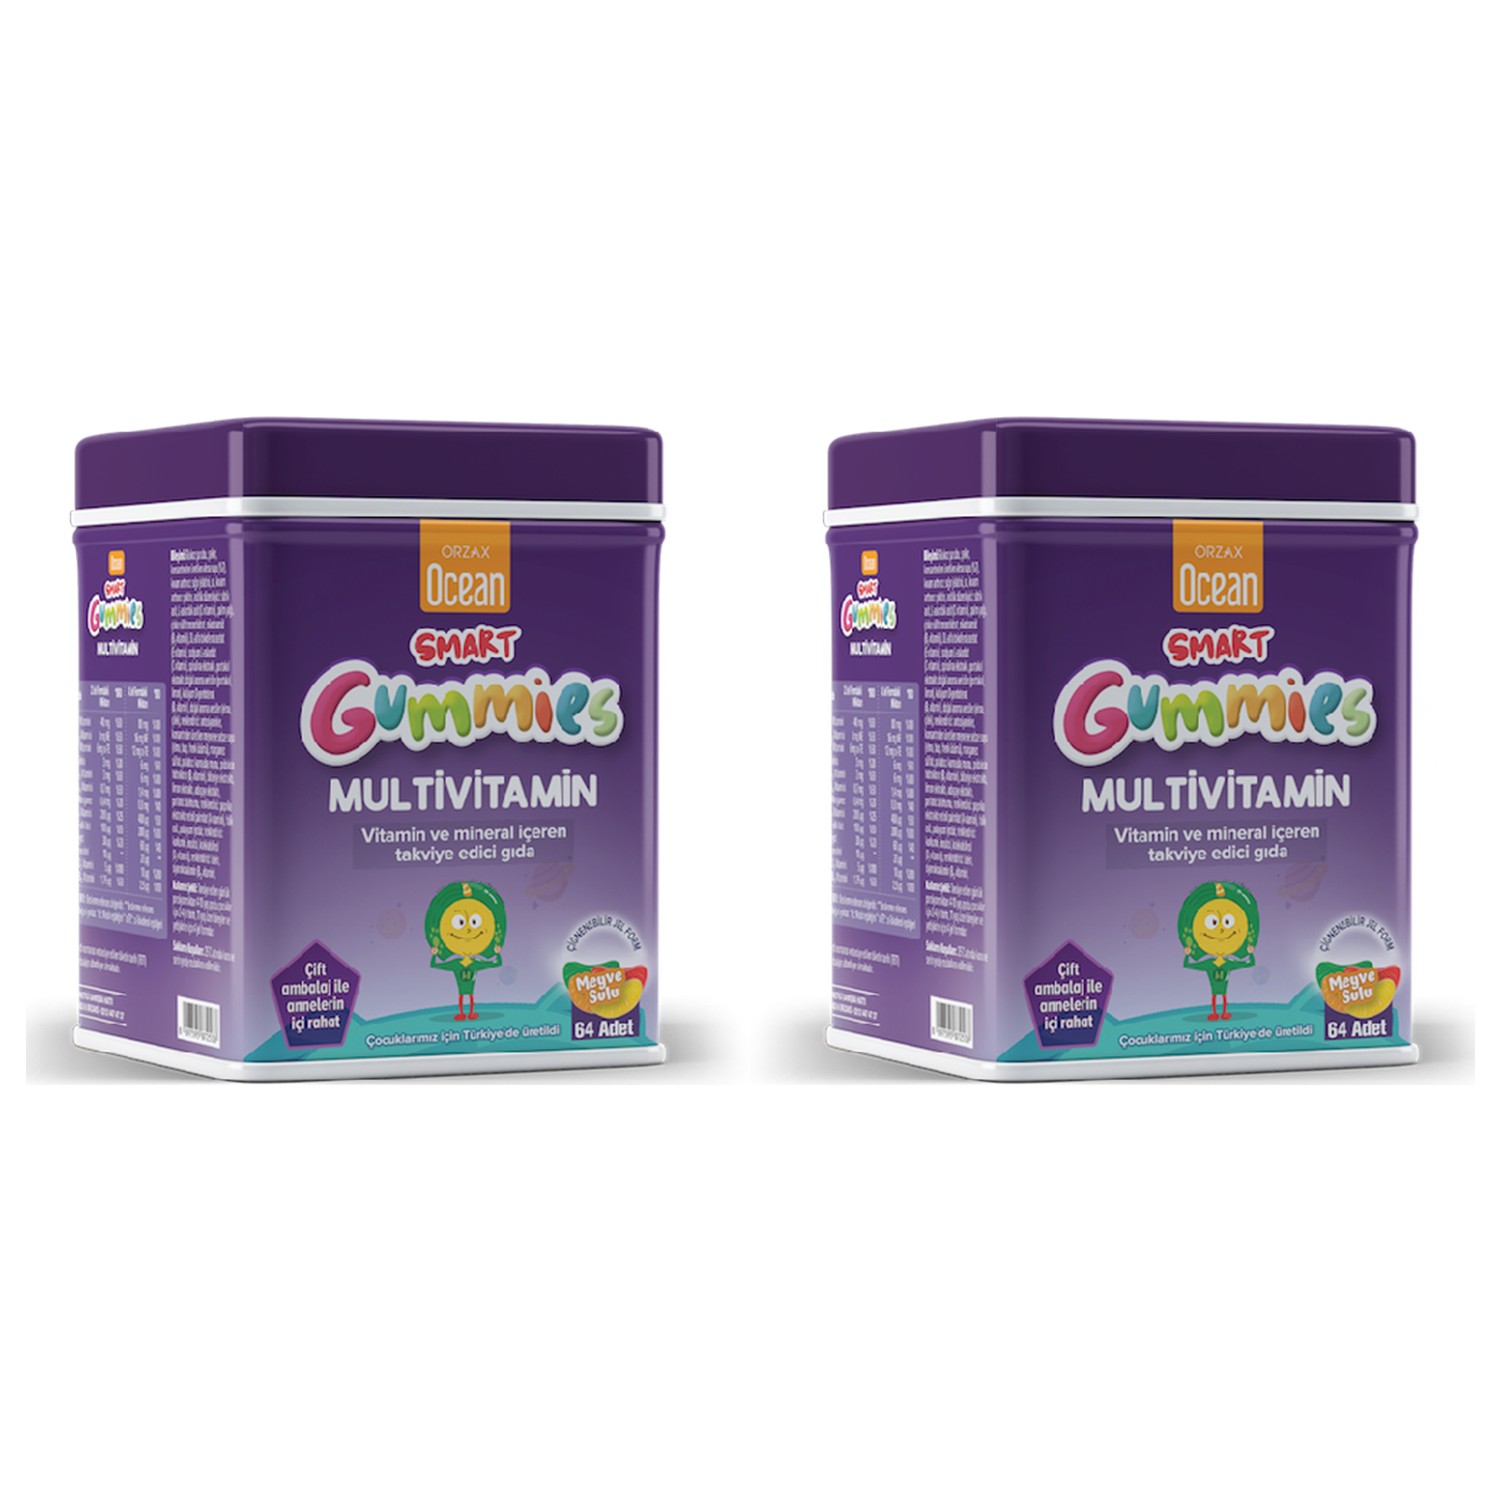 цена Пищевая добавка Orzax Ocean Smart Gummies Multivitamin Clenchable, 2 упаковки по 64 таблетки